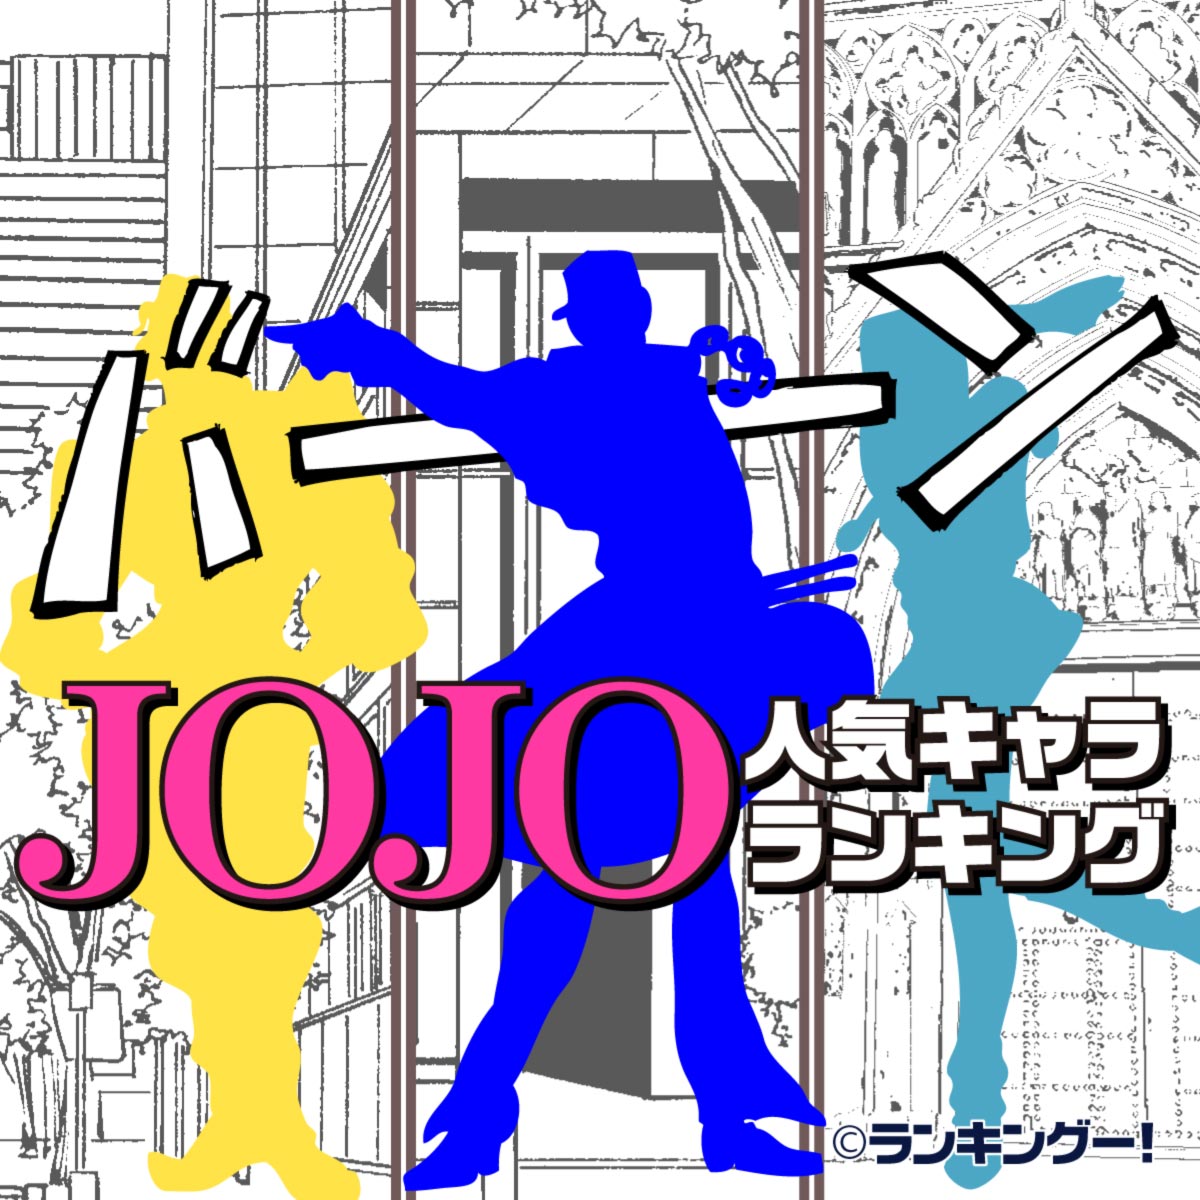 ジョジョ Jojo の奇妙な冒険 人気キャラランキングtop 11 15位 ランキングー